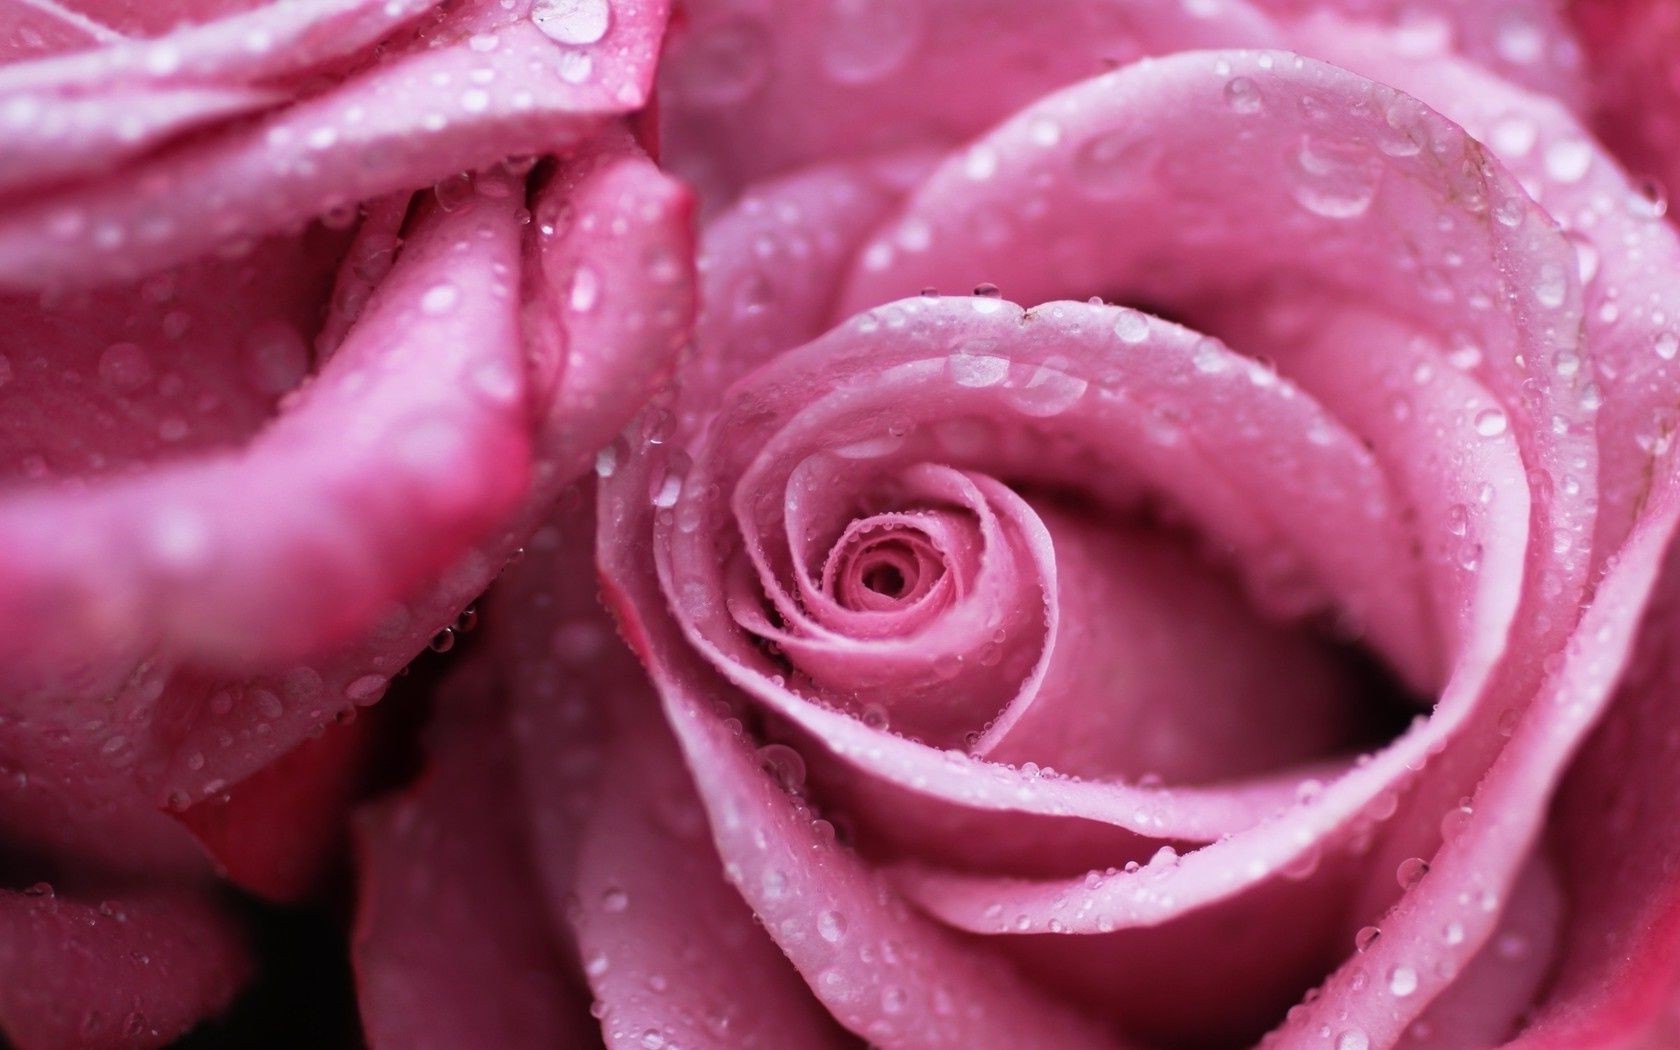 розы цветок росы лепесток любовь блюминг ароматерапия цветочные духи романтика подарок свадьба юбилей природа романтический нежный флора ботанический ароматный